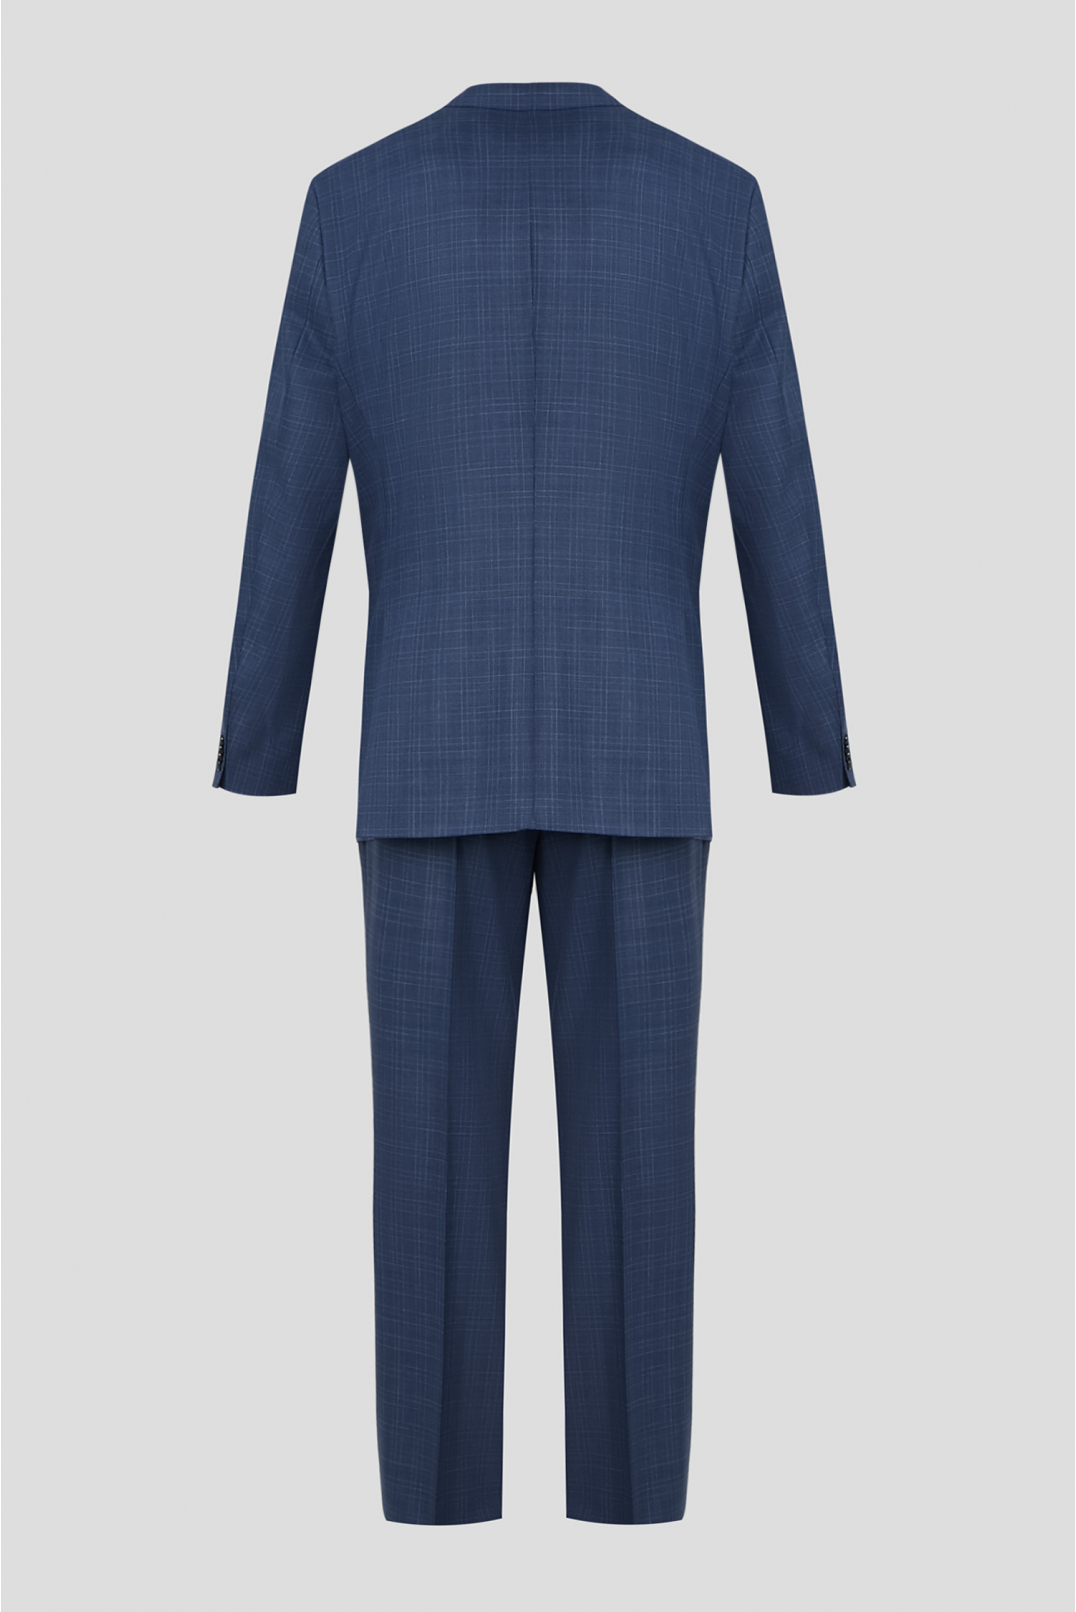 Мужской синий шерстяной костюм в клетку (пиджак, брюки) - 2